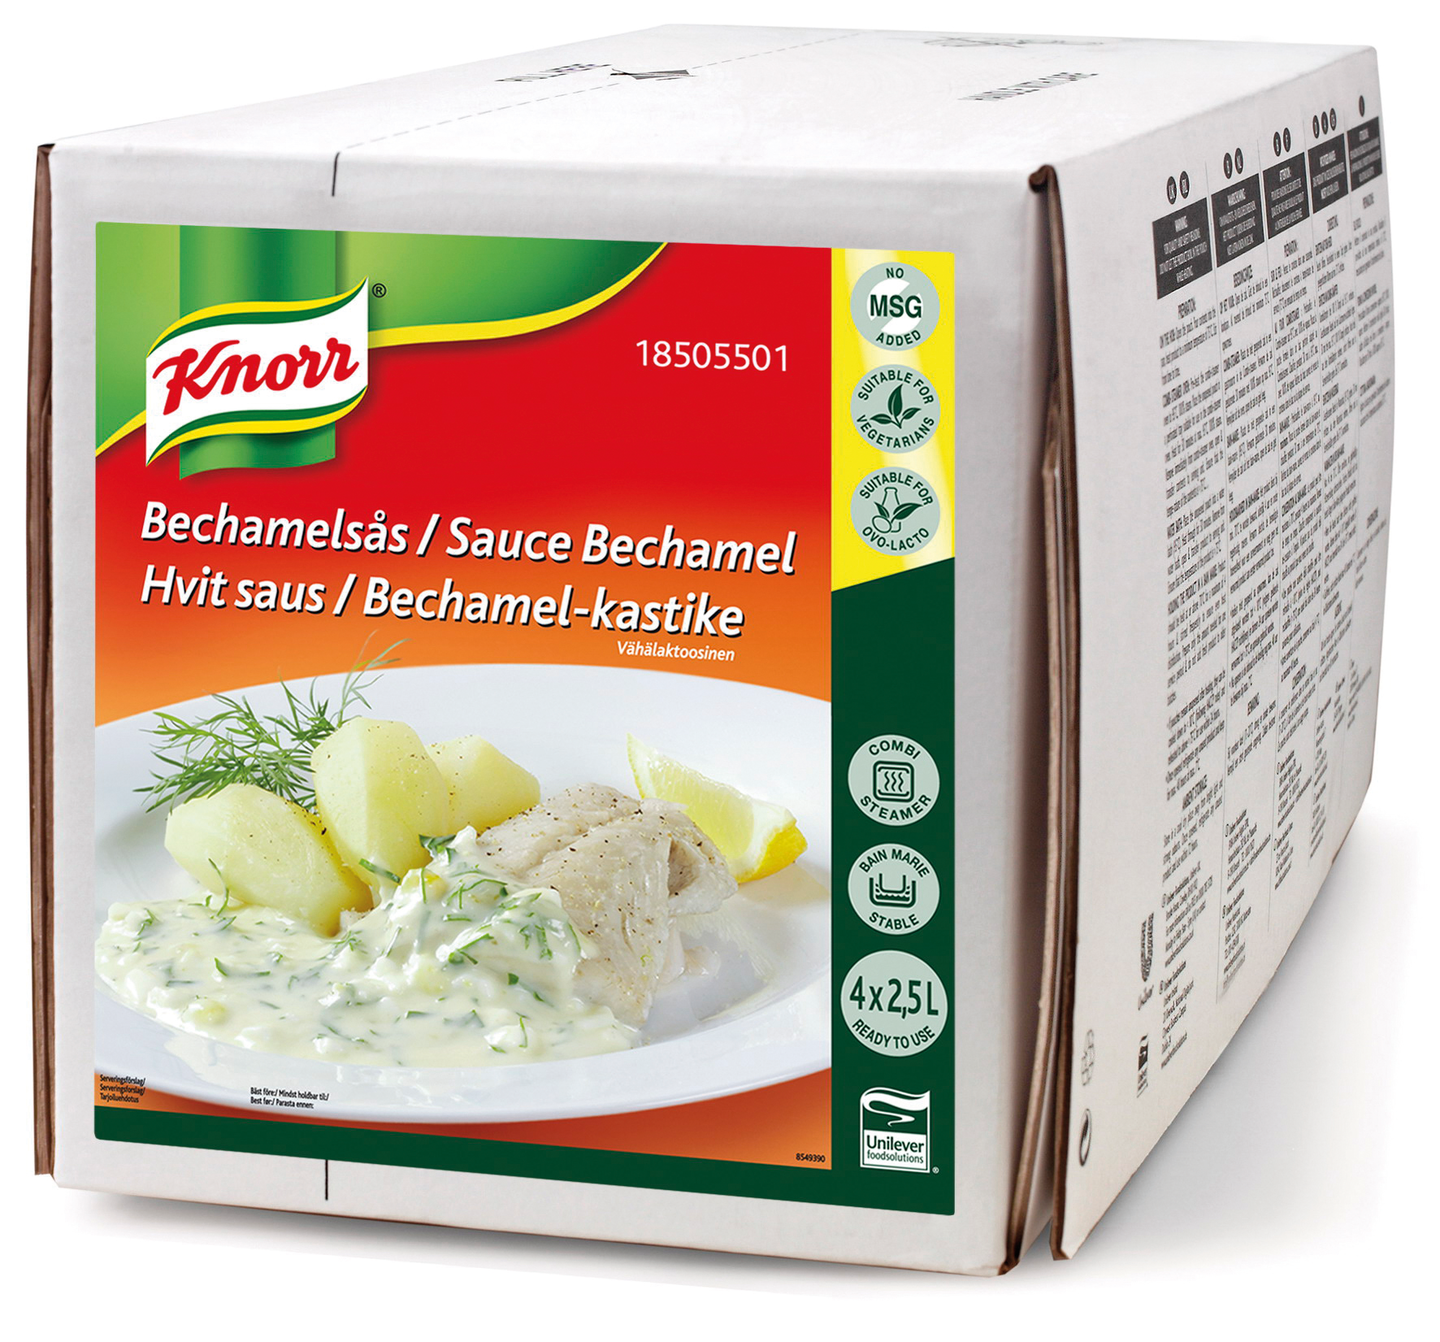 Knorr 100% Bechamel-kastike 2,5l